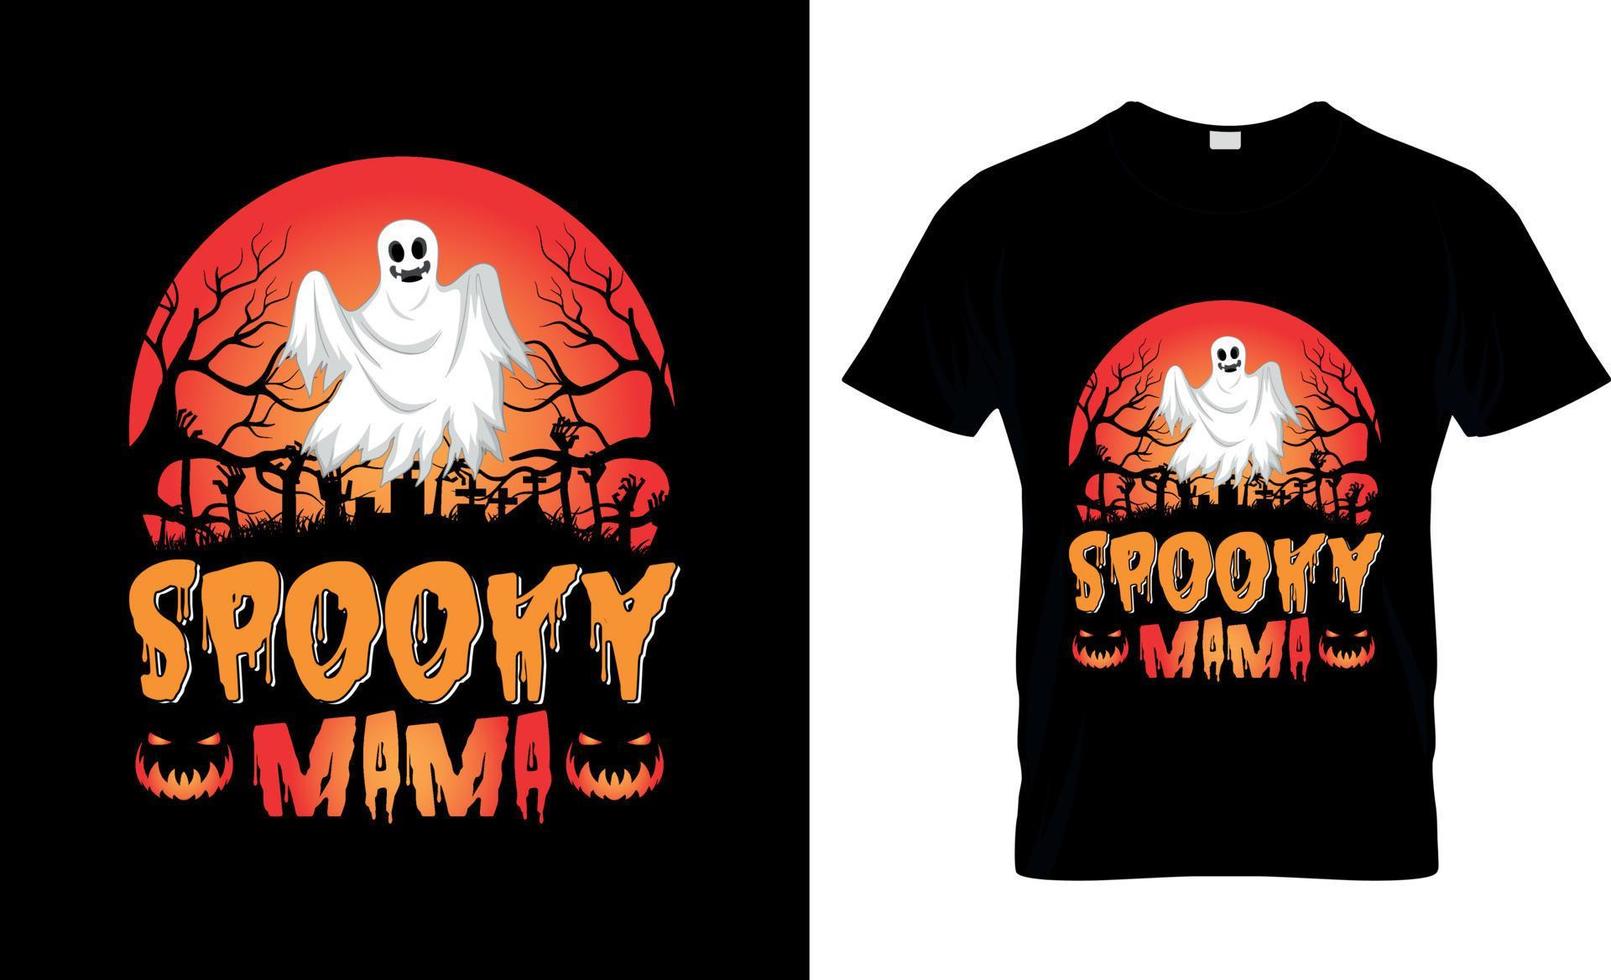 Halloween-T-Shirt-Design, Halloween-T-Shirt-Slogan und Bekleidungsdesign, Halloween-Typografie, Halloween-Vektor, Halloween-Illustration vektor